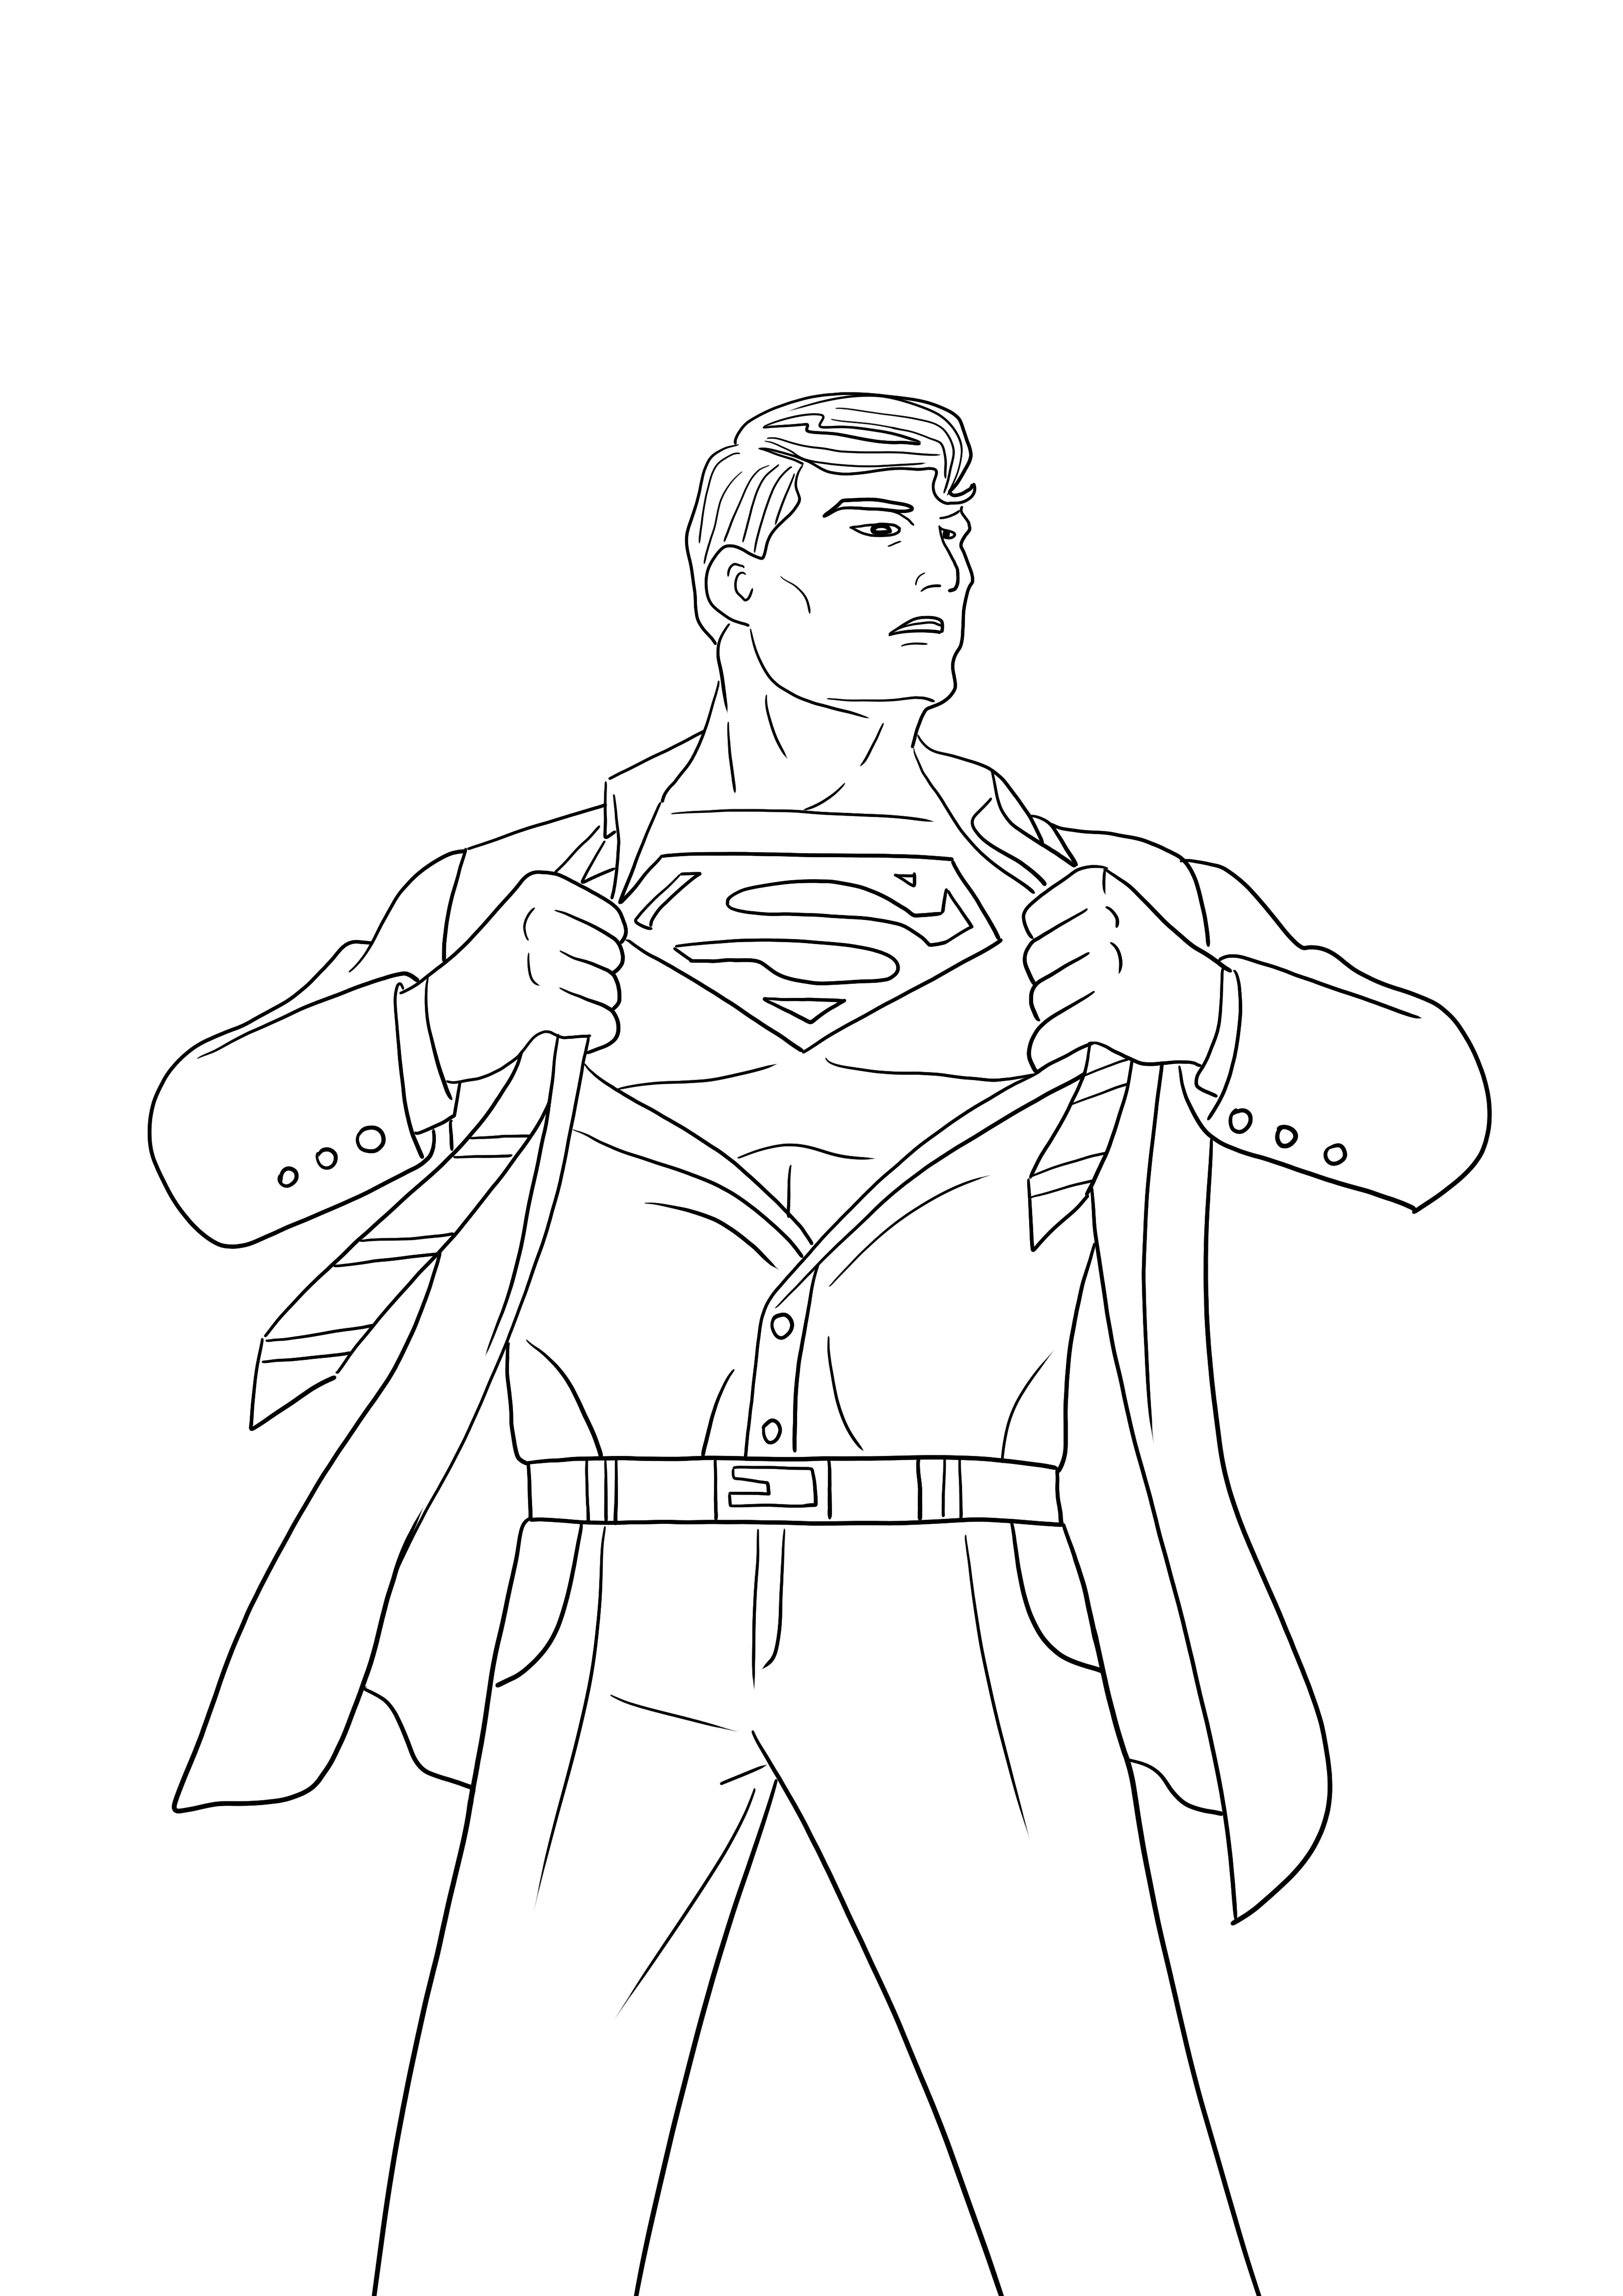 Superman sta rivelando la sua immagine da stampare e colorare senza identità